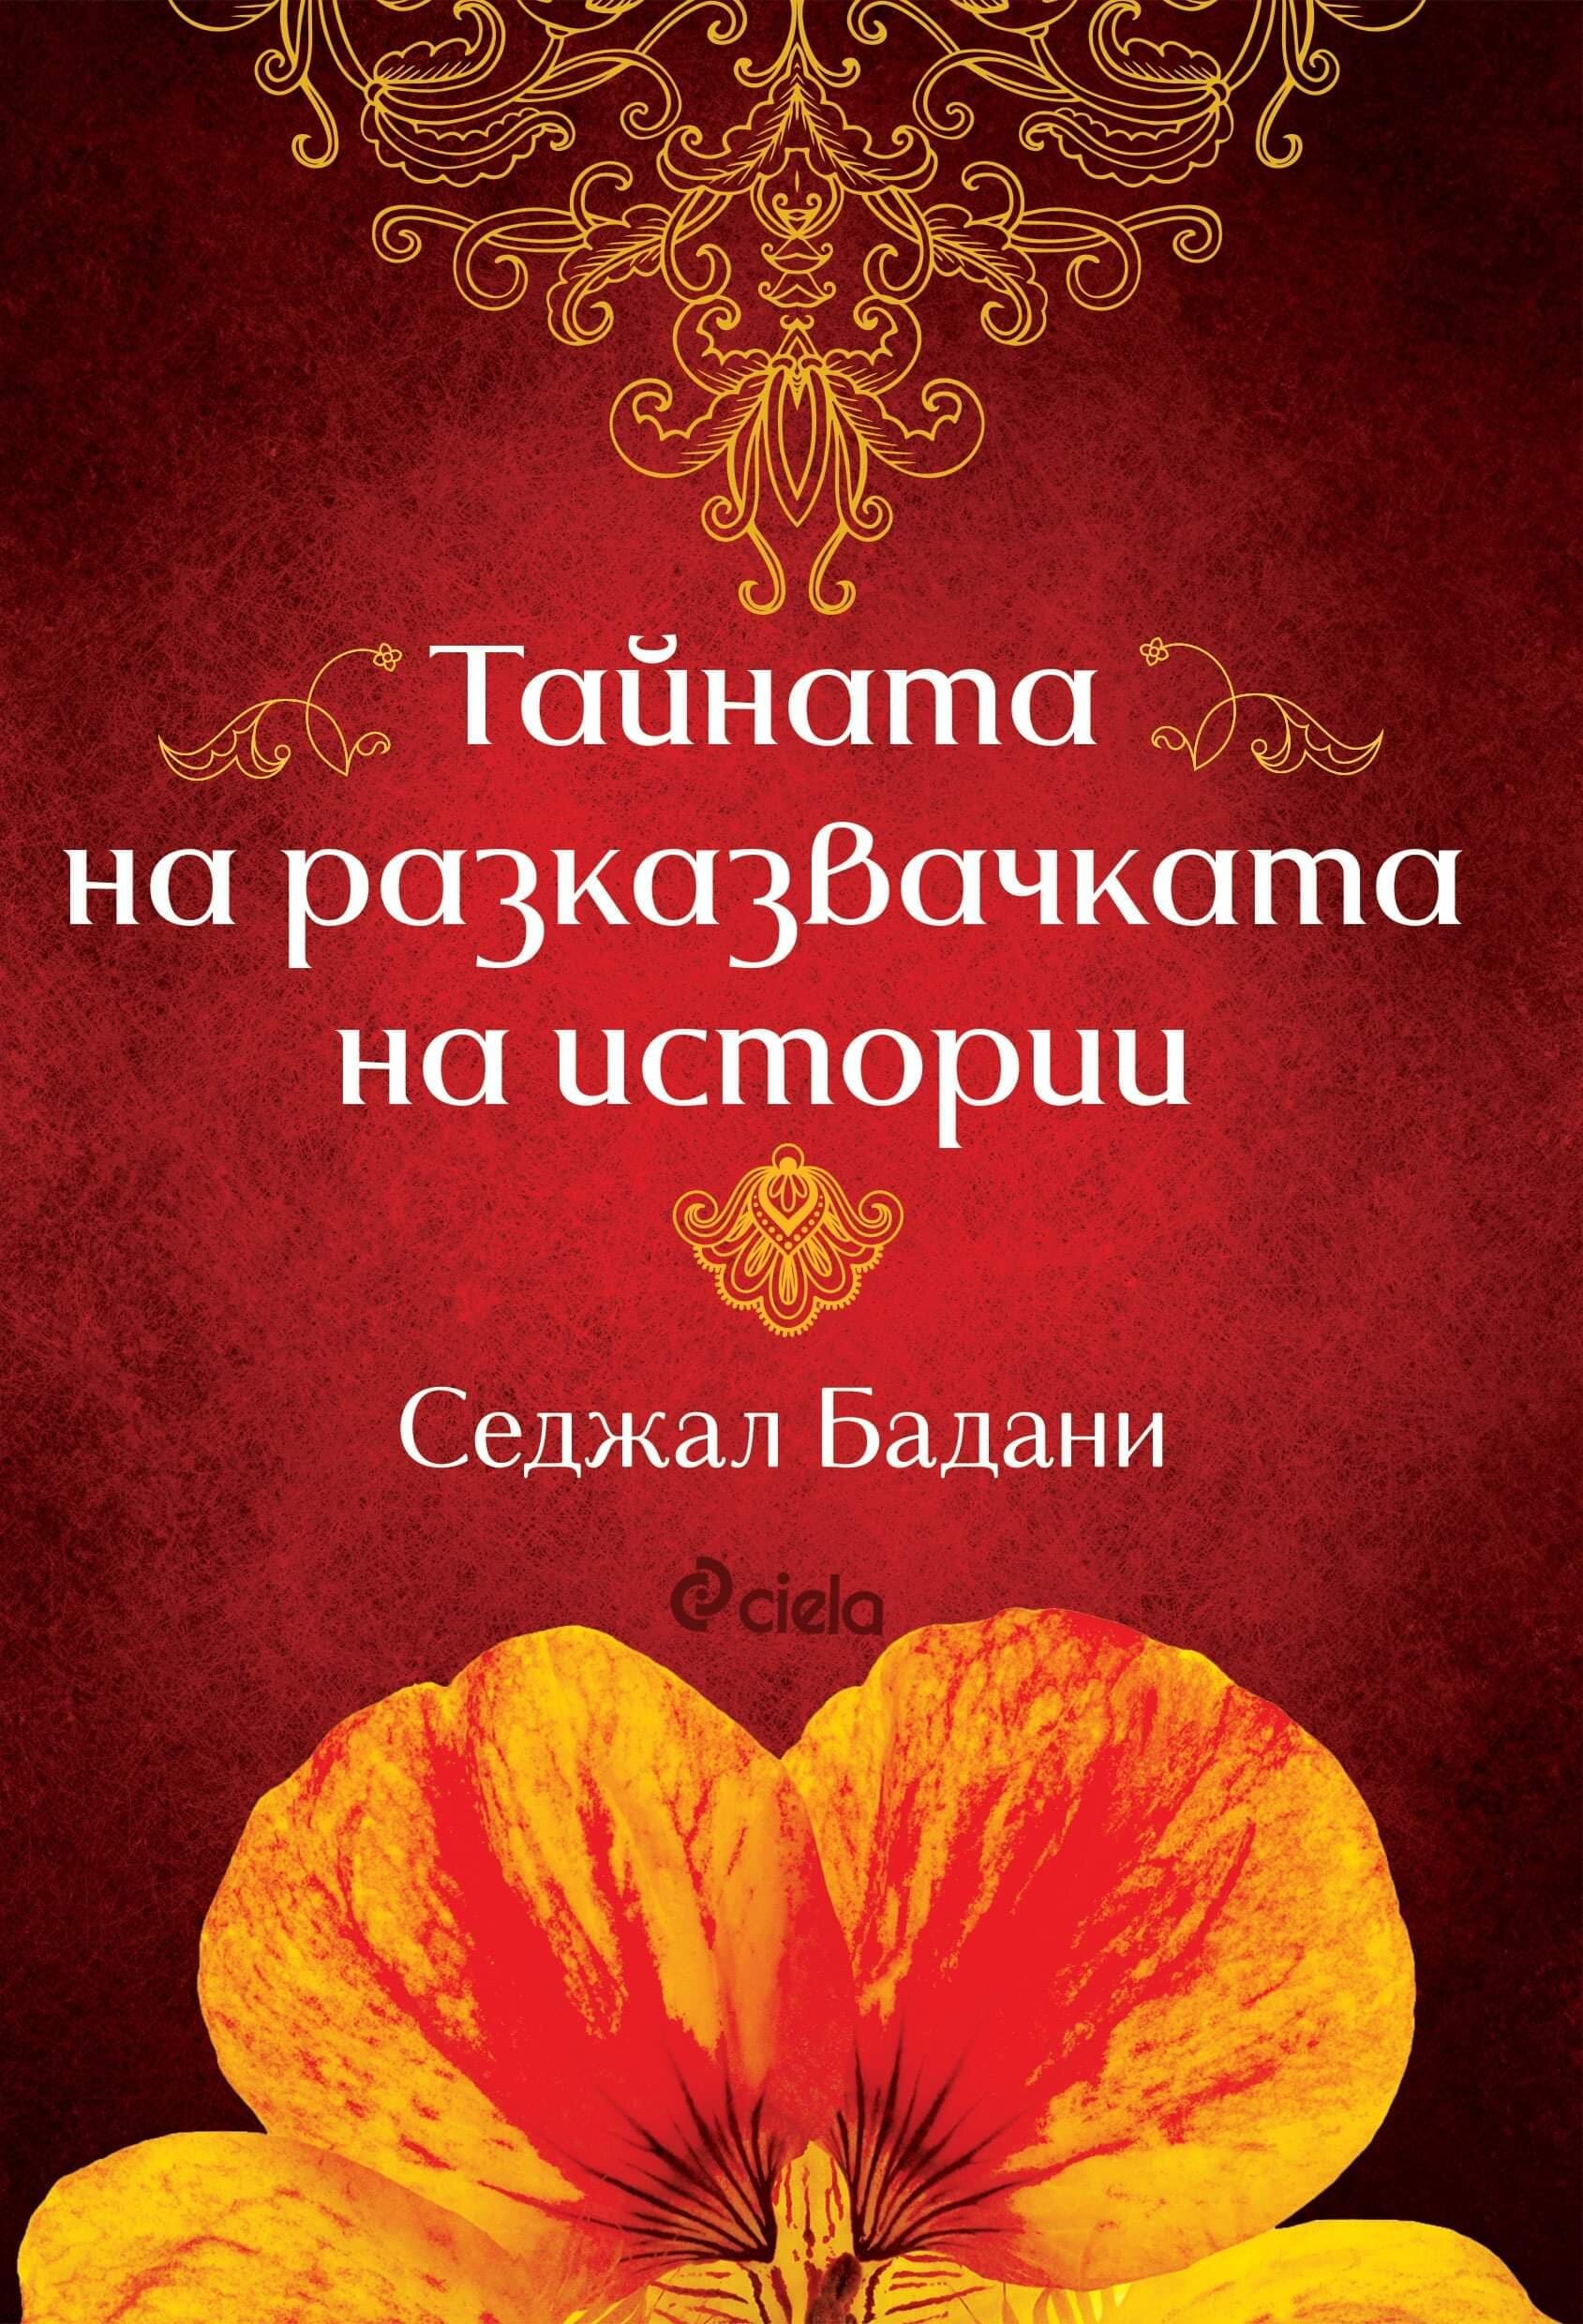 THE STORYTELLER’S SECRET by Sejal Badani - Bulgarian cover 2.jpg